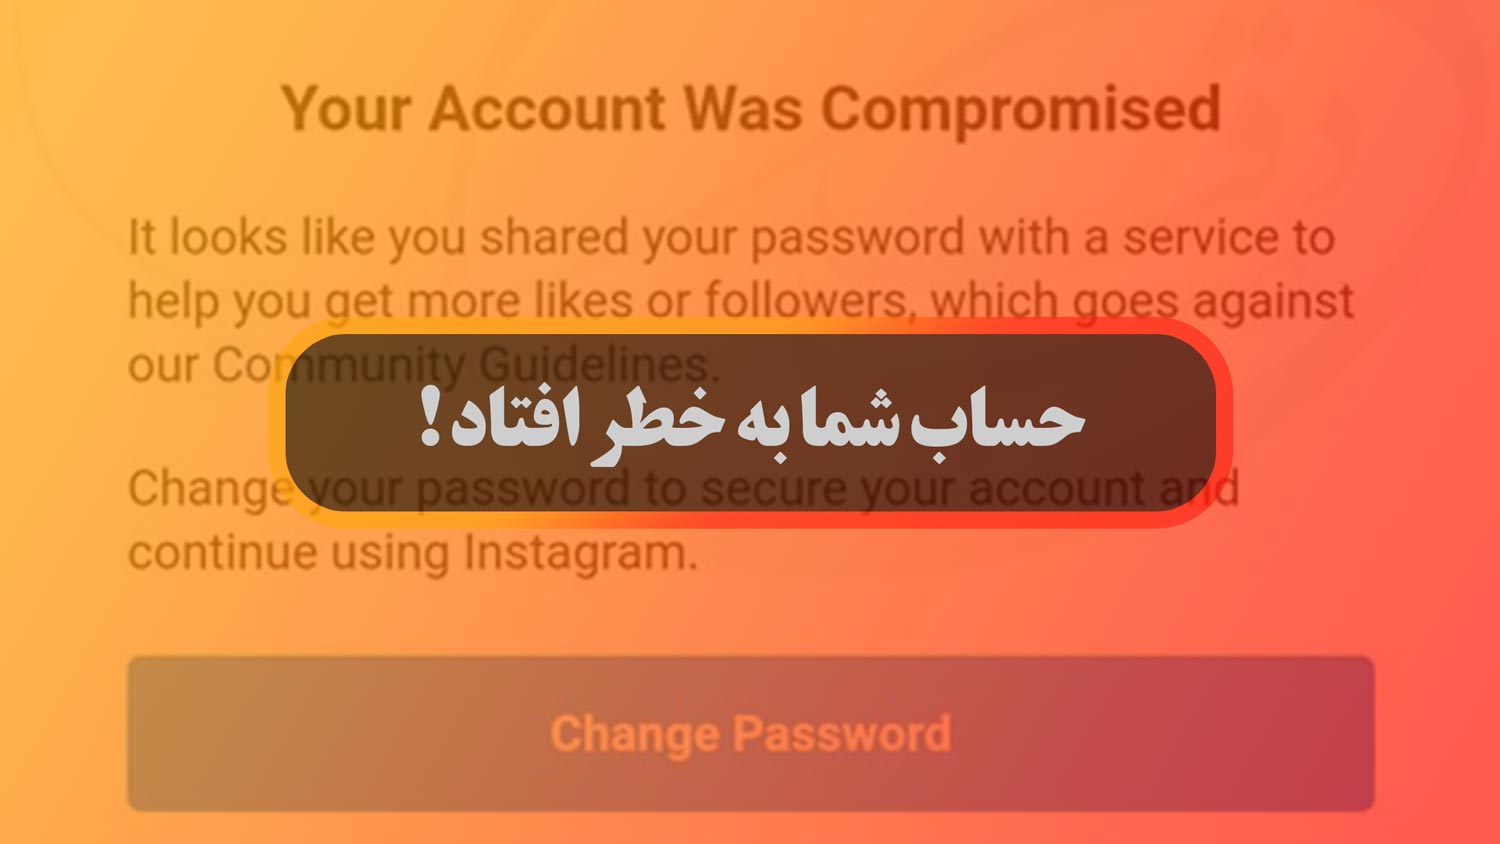 حل مشکل your account was compromised یا حساب شما به خطر افتاد در اینستاگرام